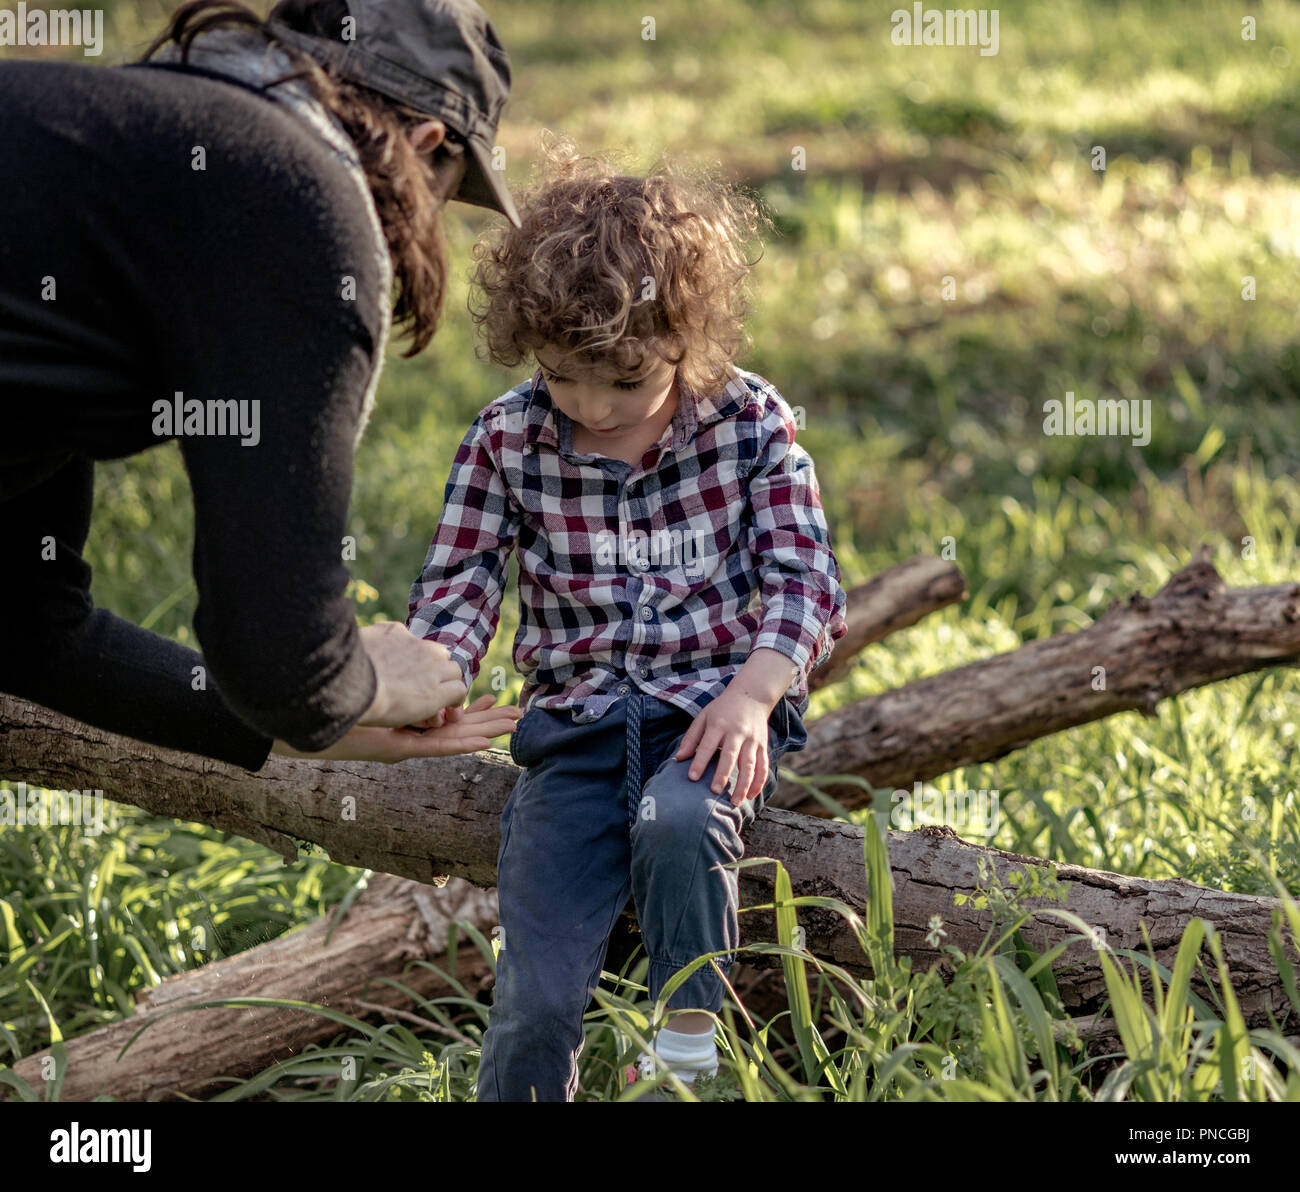 Mutter hilft, kleiner Junge, nachdem er seine Hand verletzt hat, eine Frau an des kleinen Jungen kratzen Stockfoto